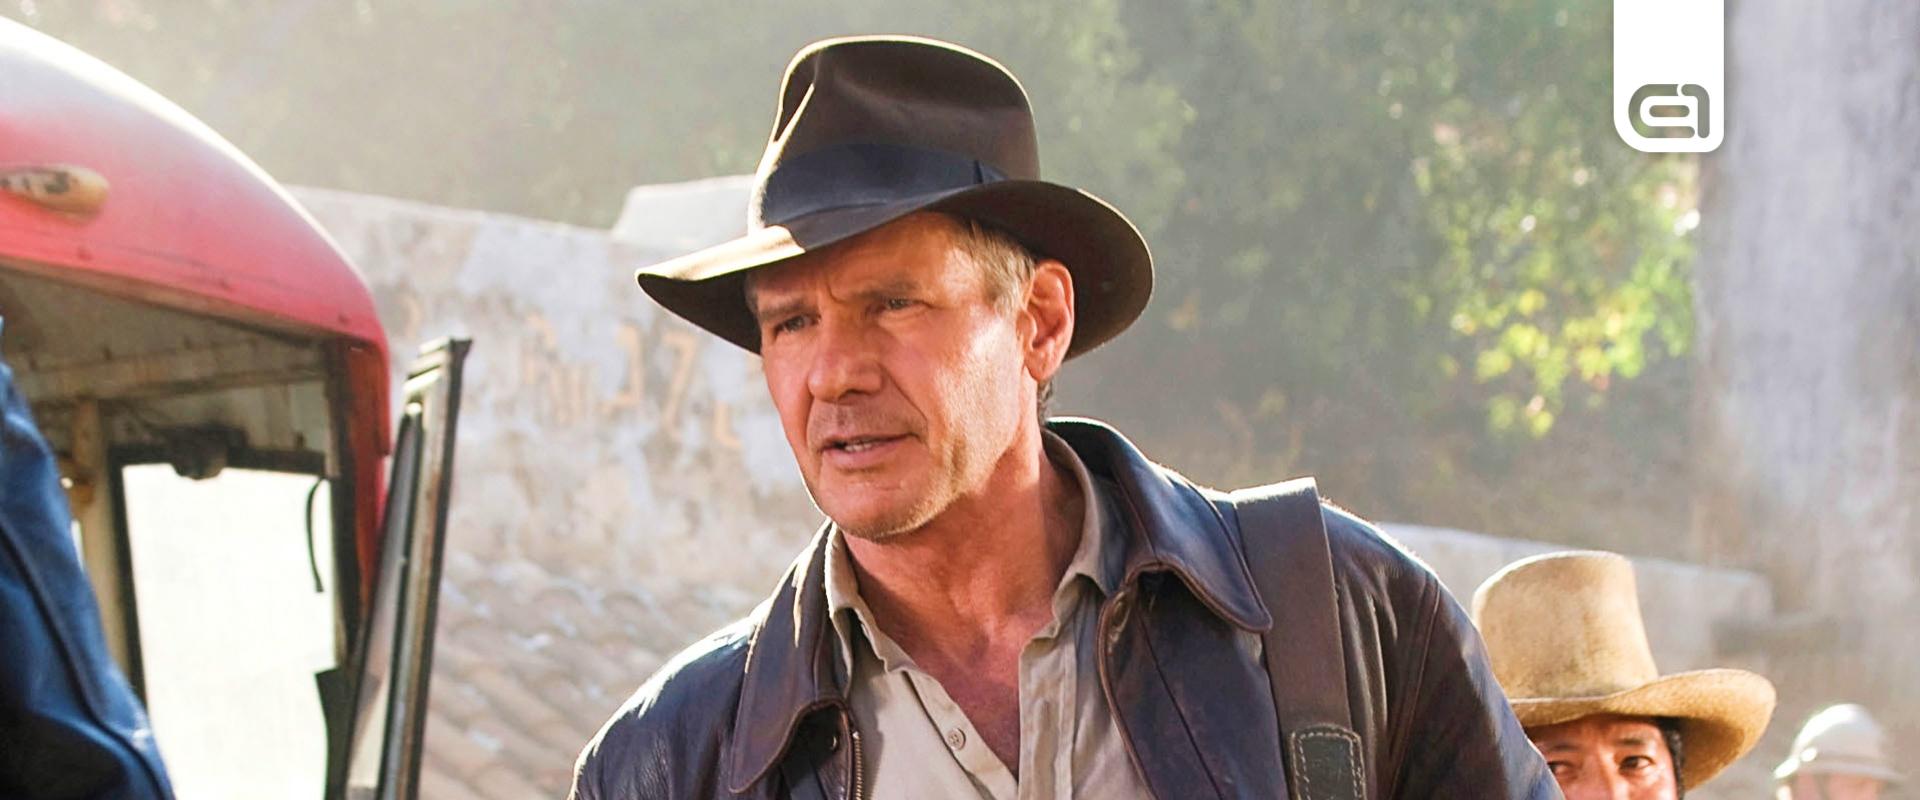 Látványos címlapon Indiana Jones, több hivatalos információ is lelepleződik a filmről